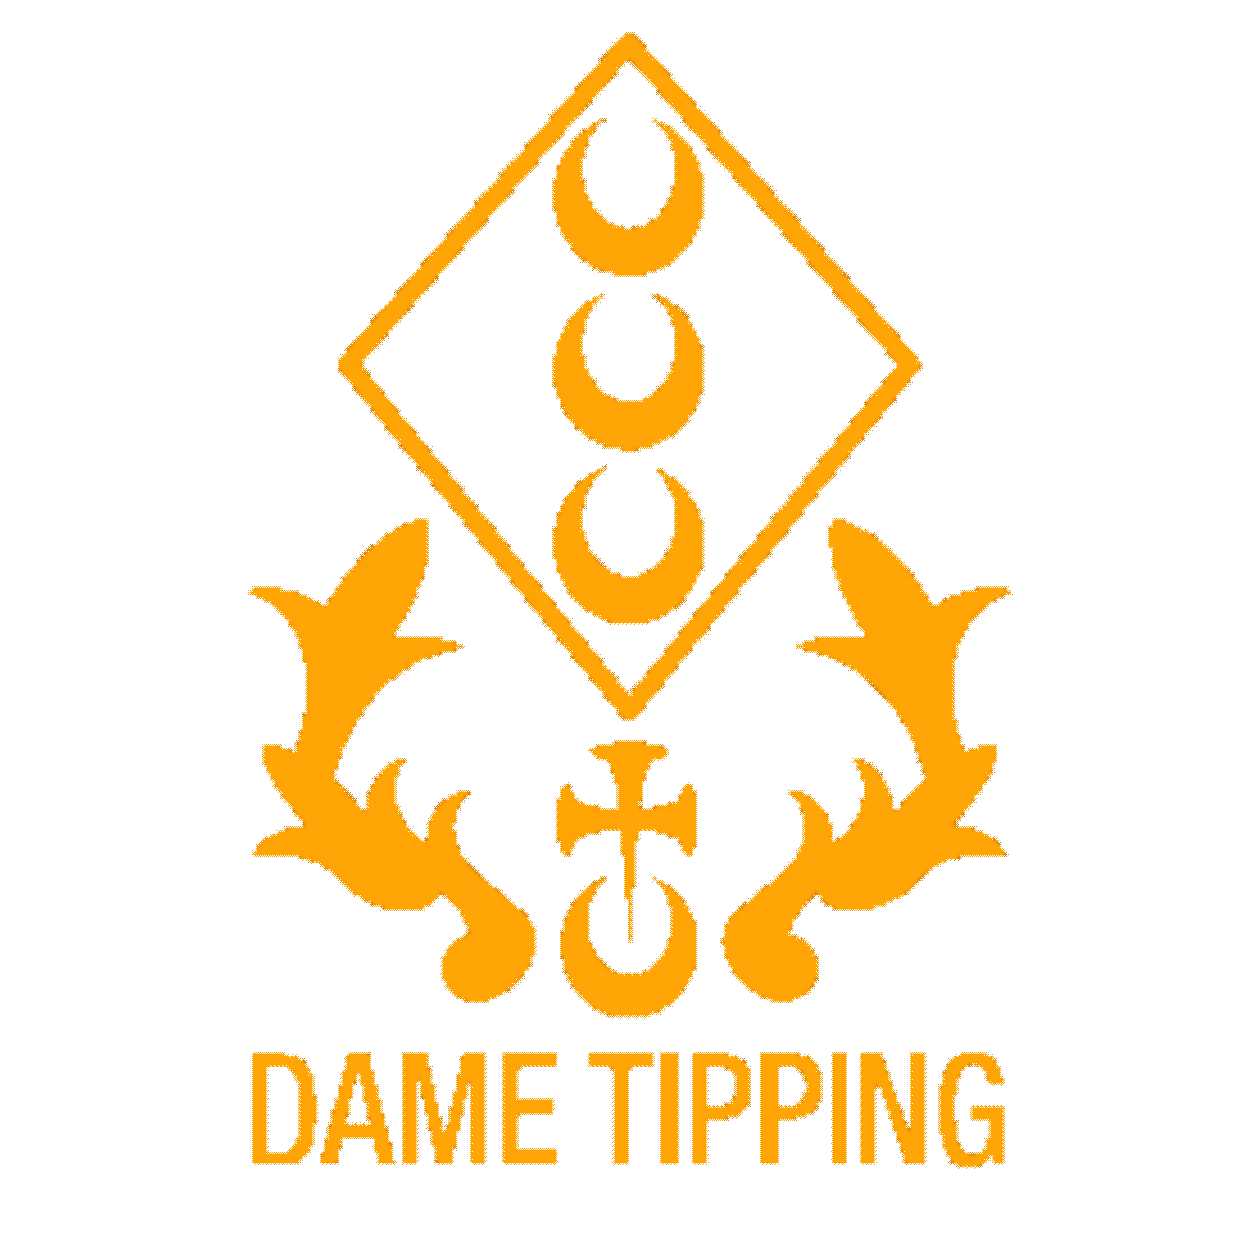 Dame Tipping logo.jpg